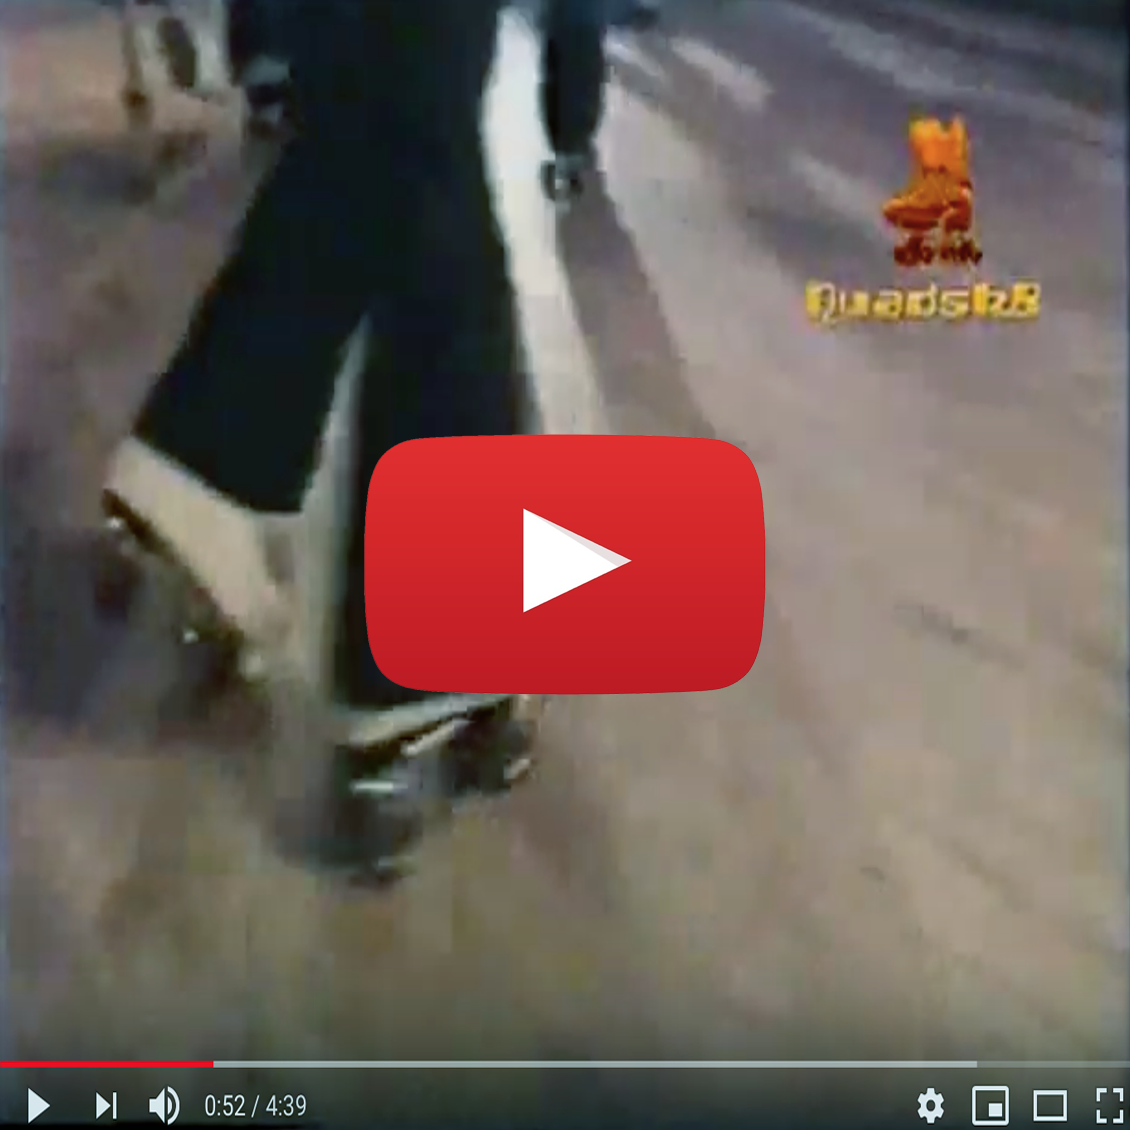 disco roller skate